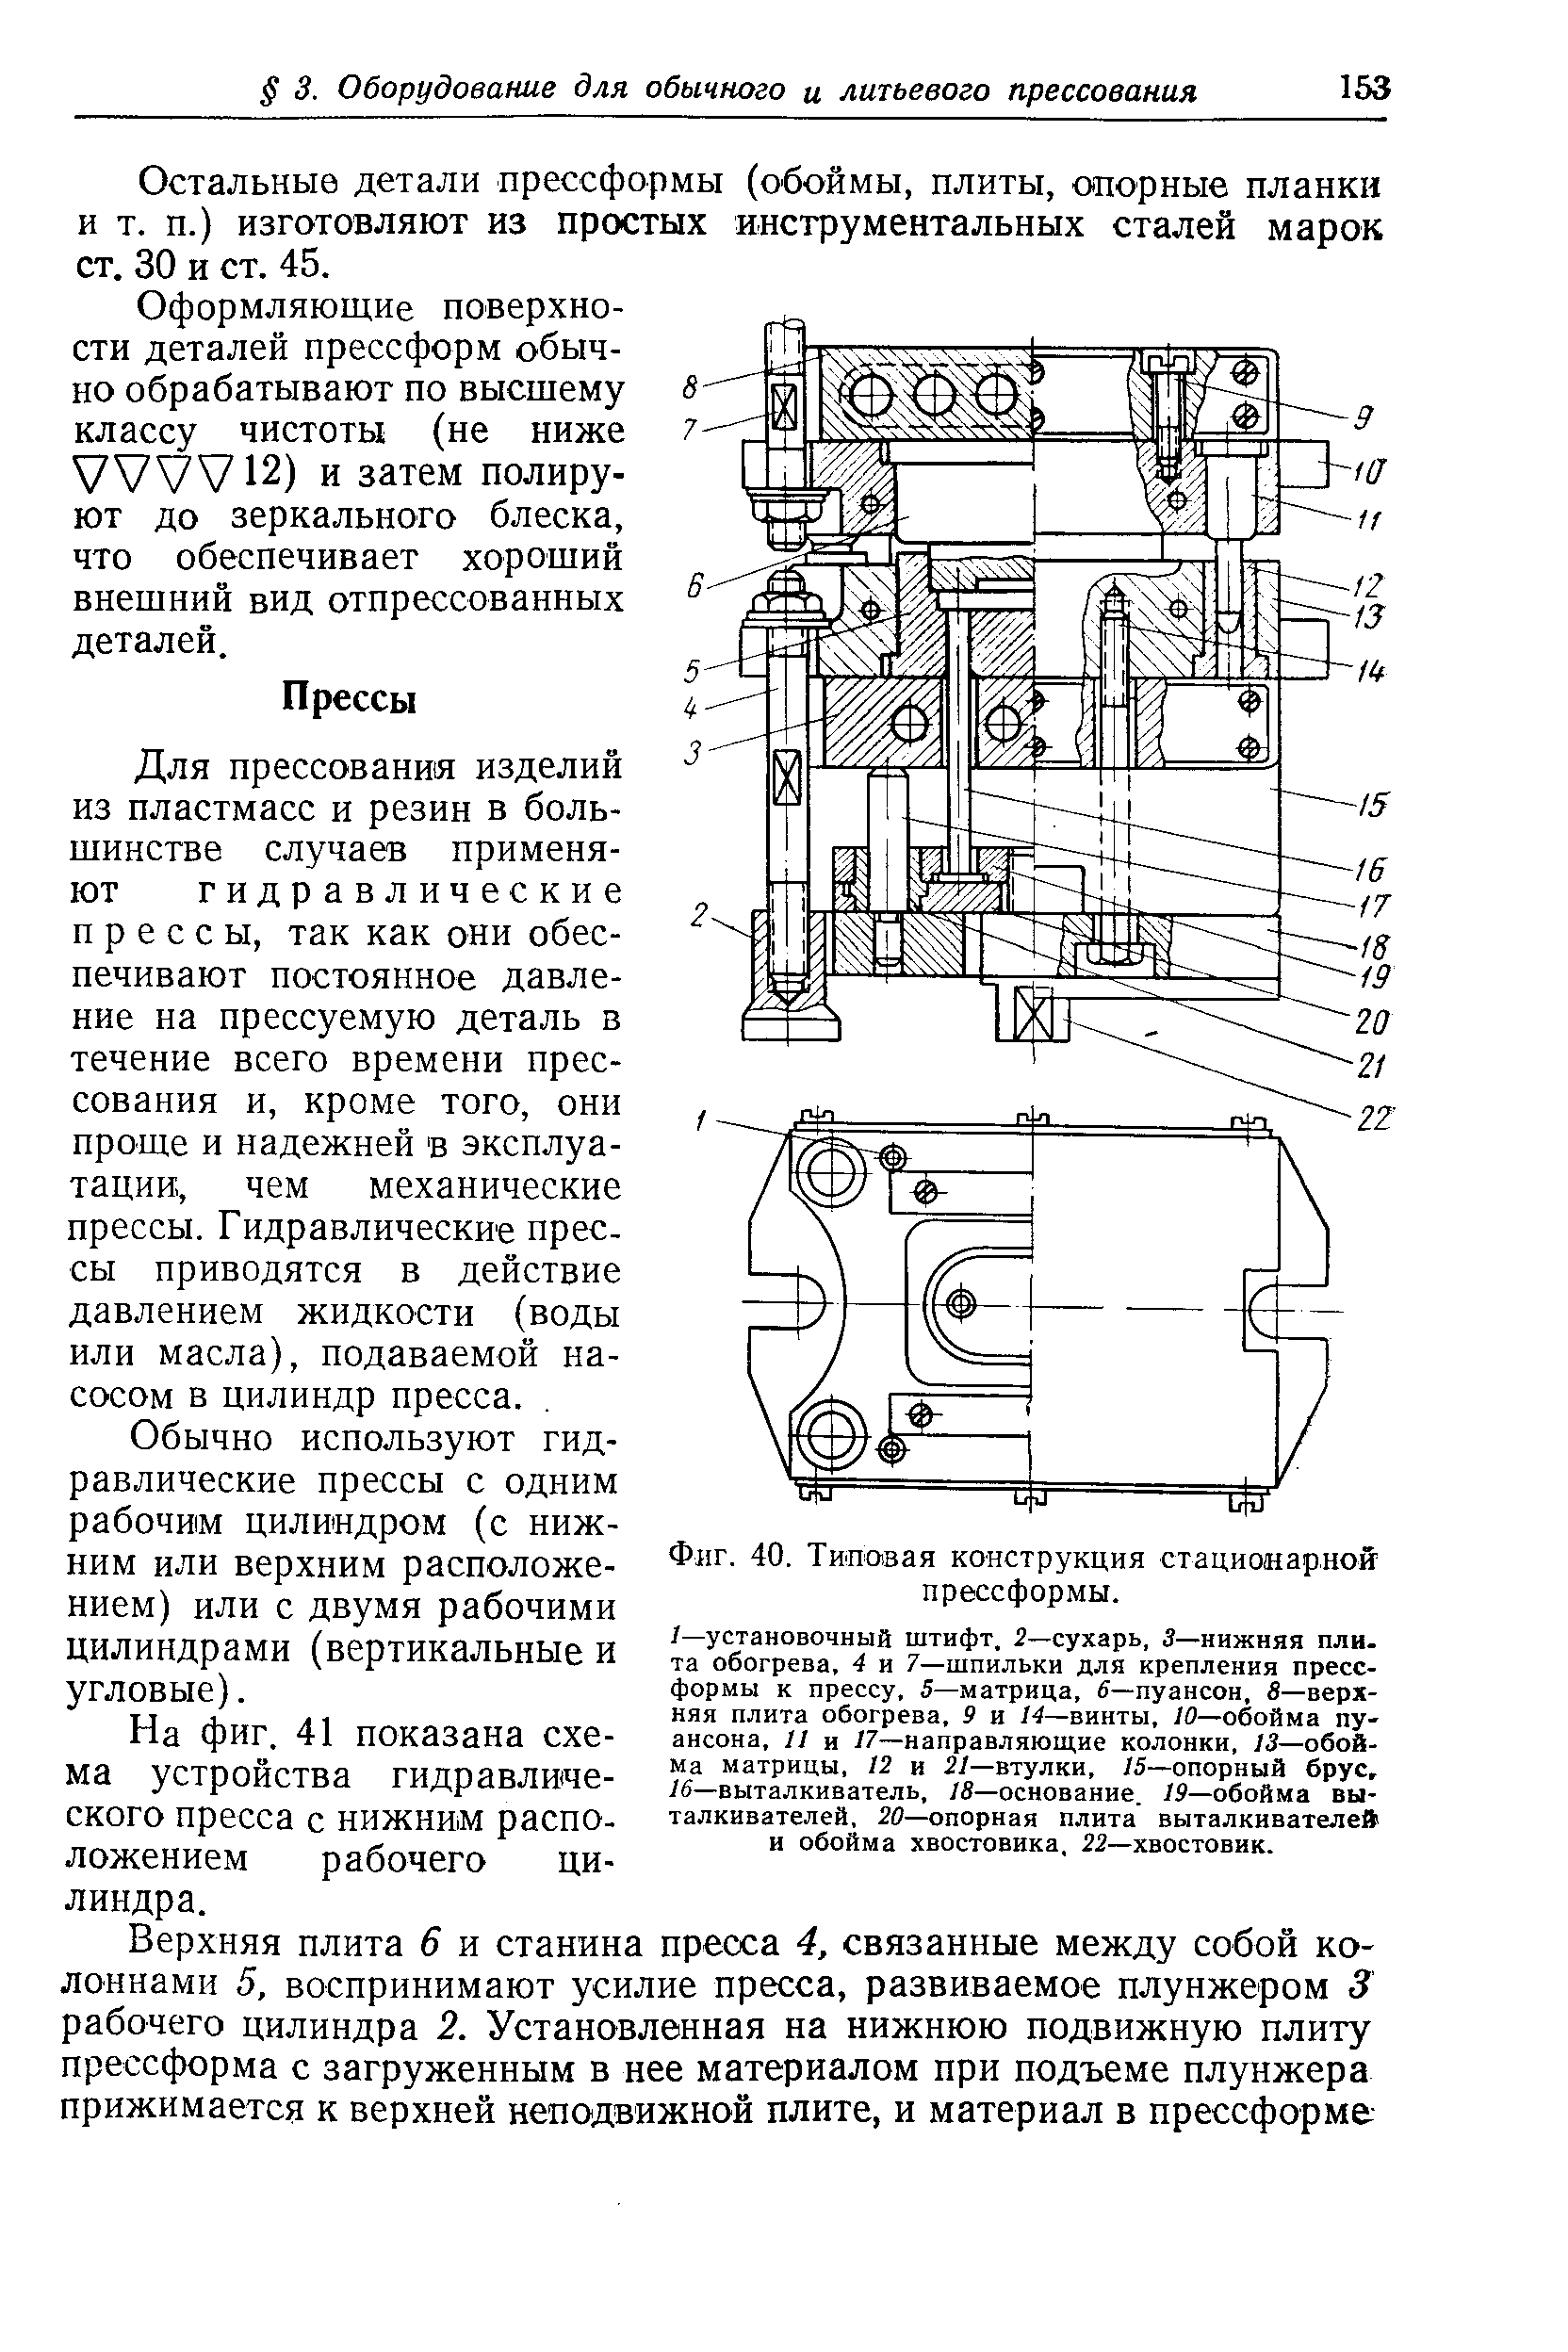 Фиг. 40. Типовая конструкция стационарной прессформы.
